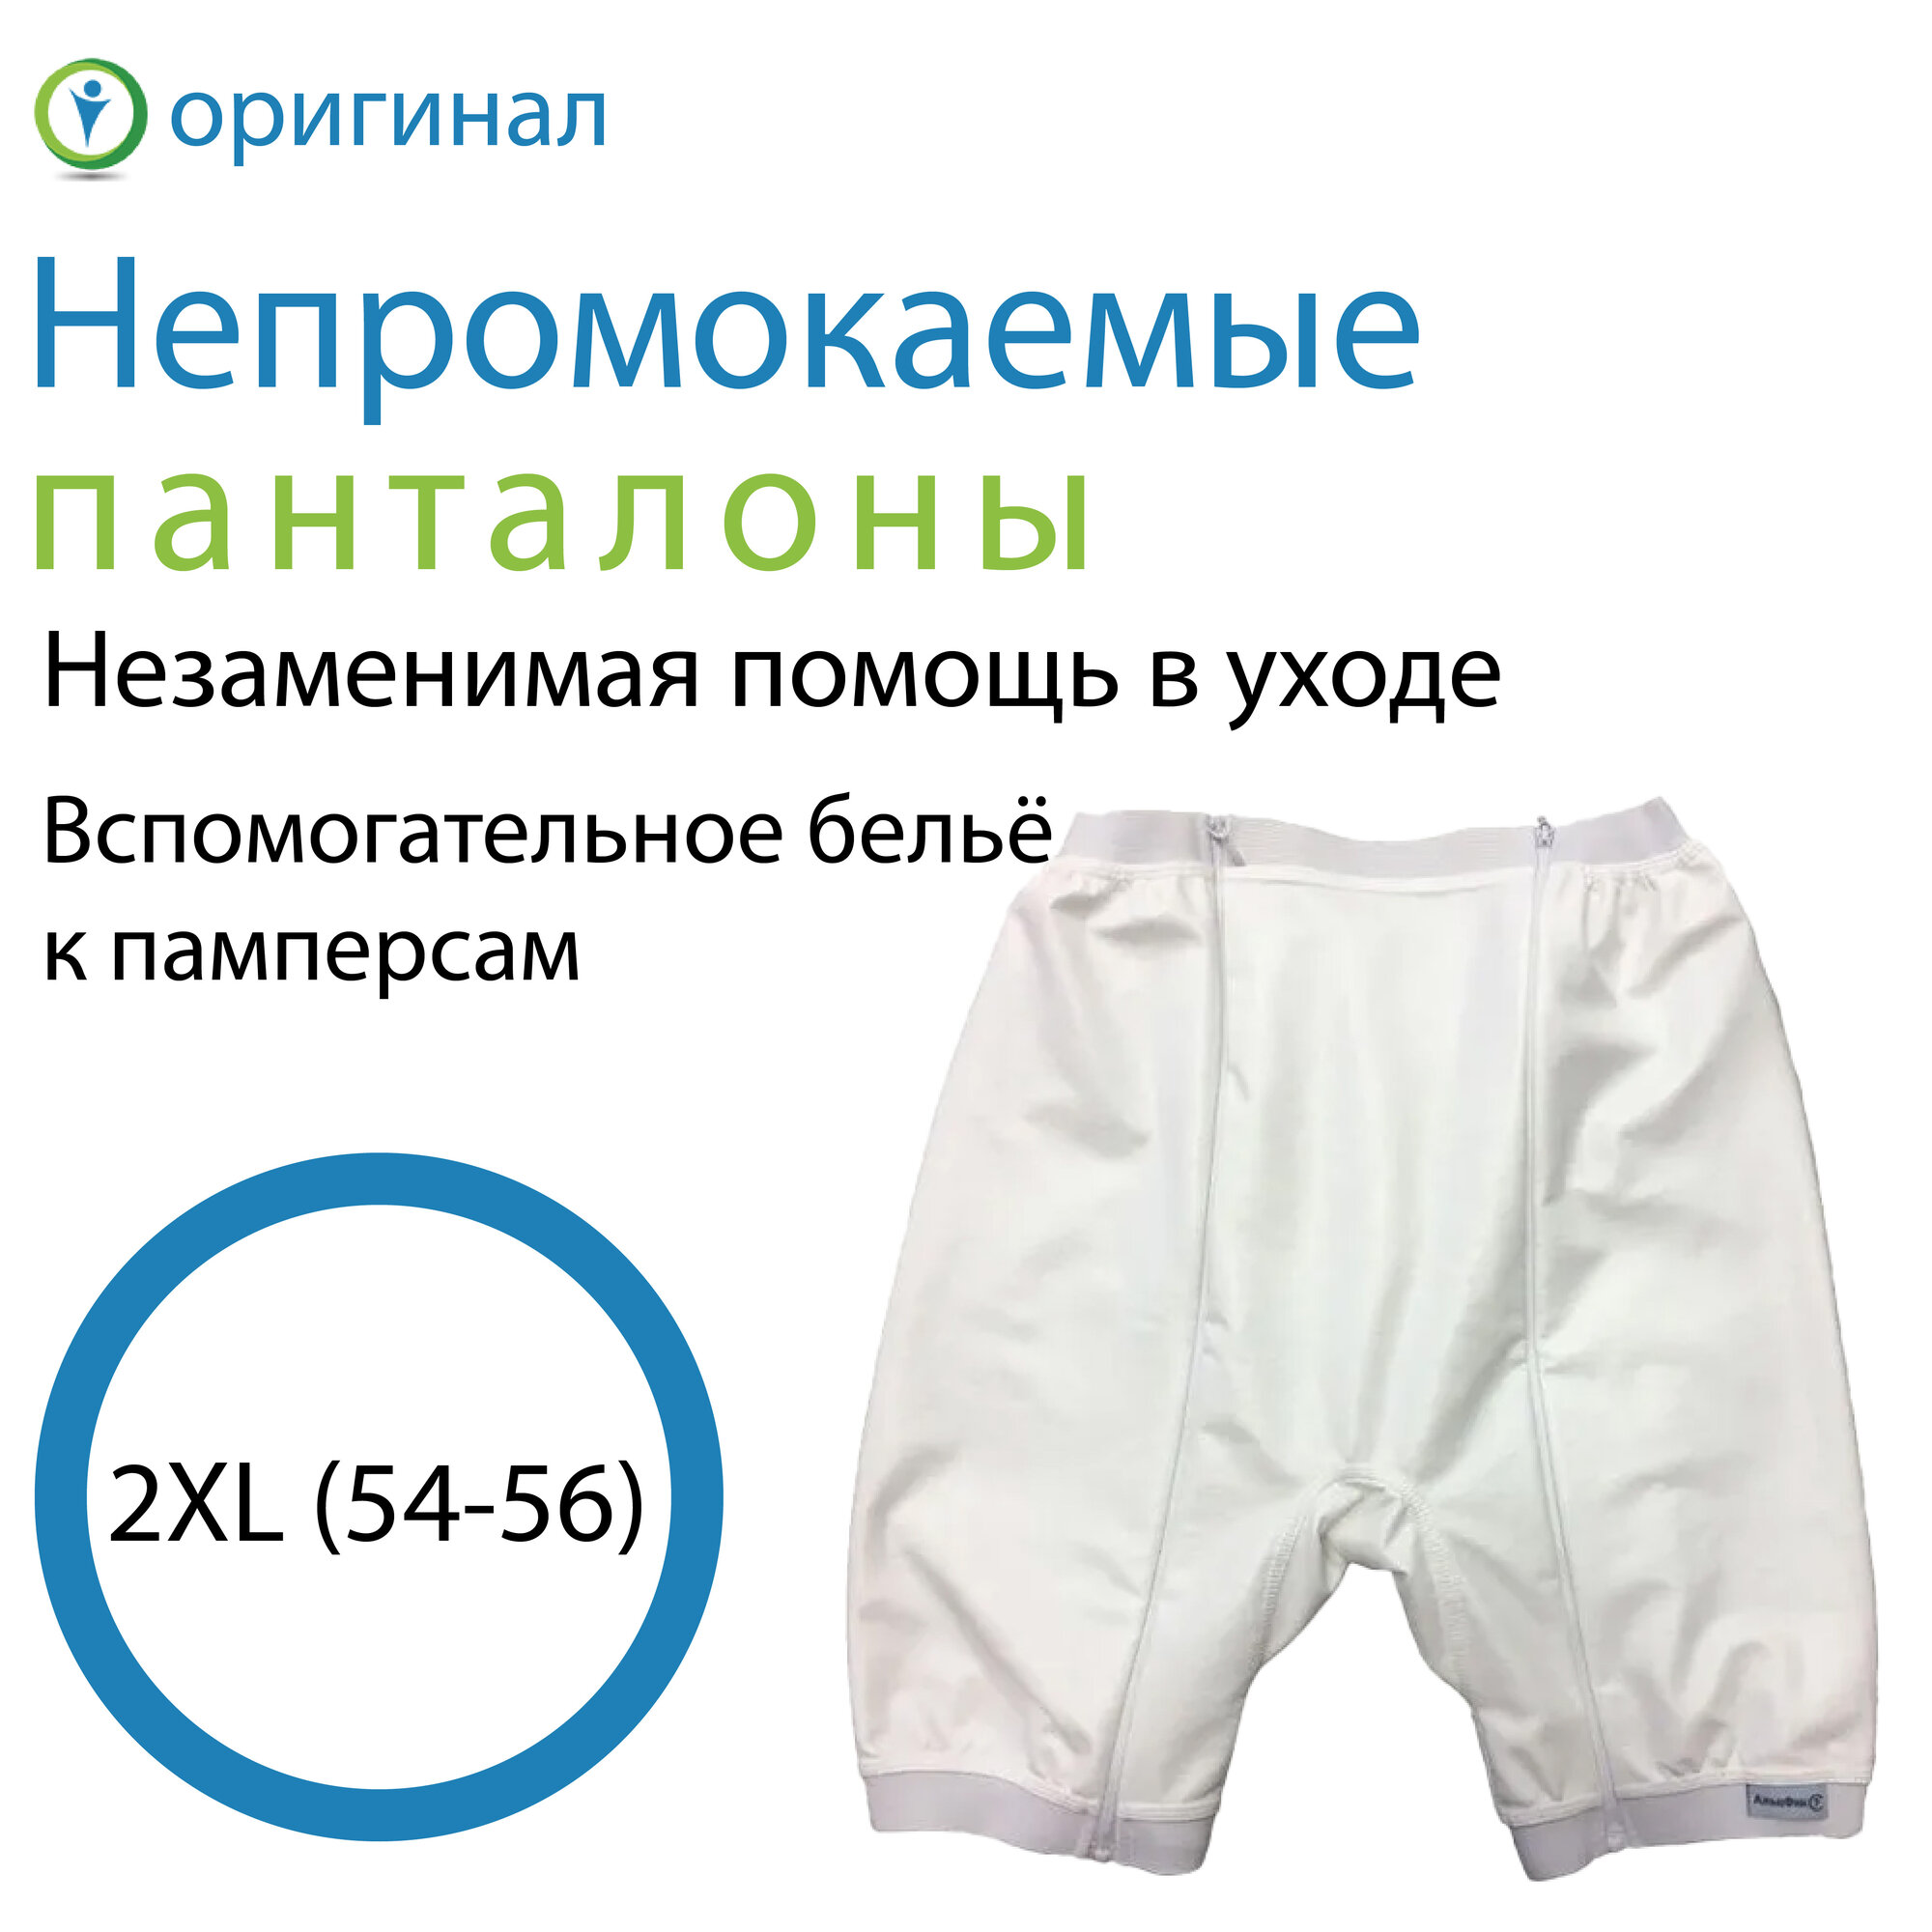 Адаптивная одежда Непромокаемые панталоны, 2XL (54-56)